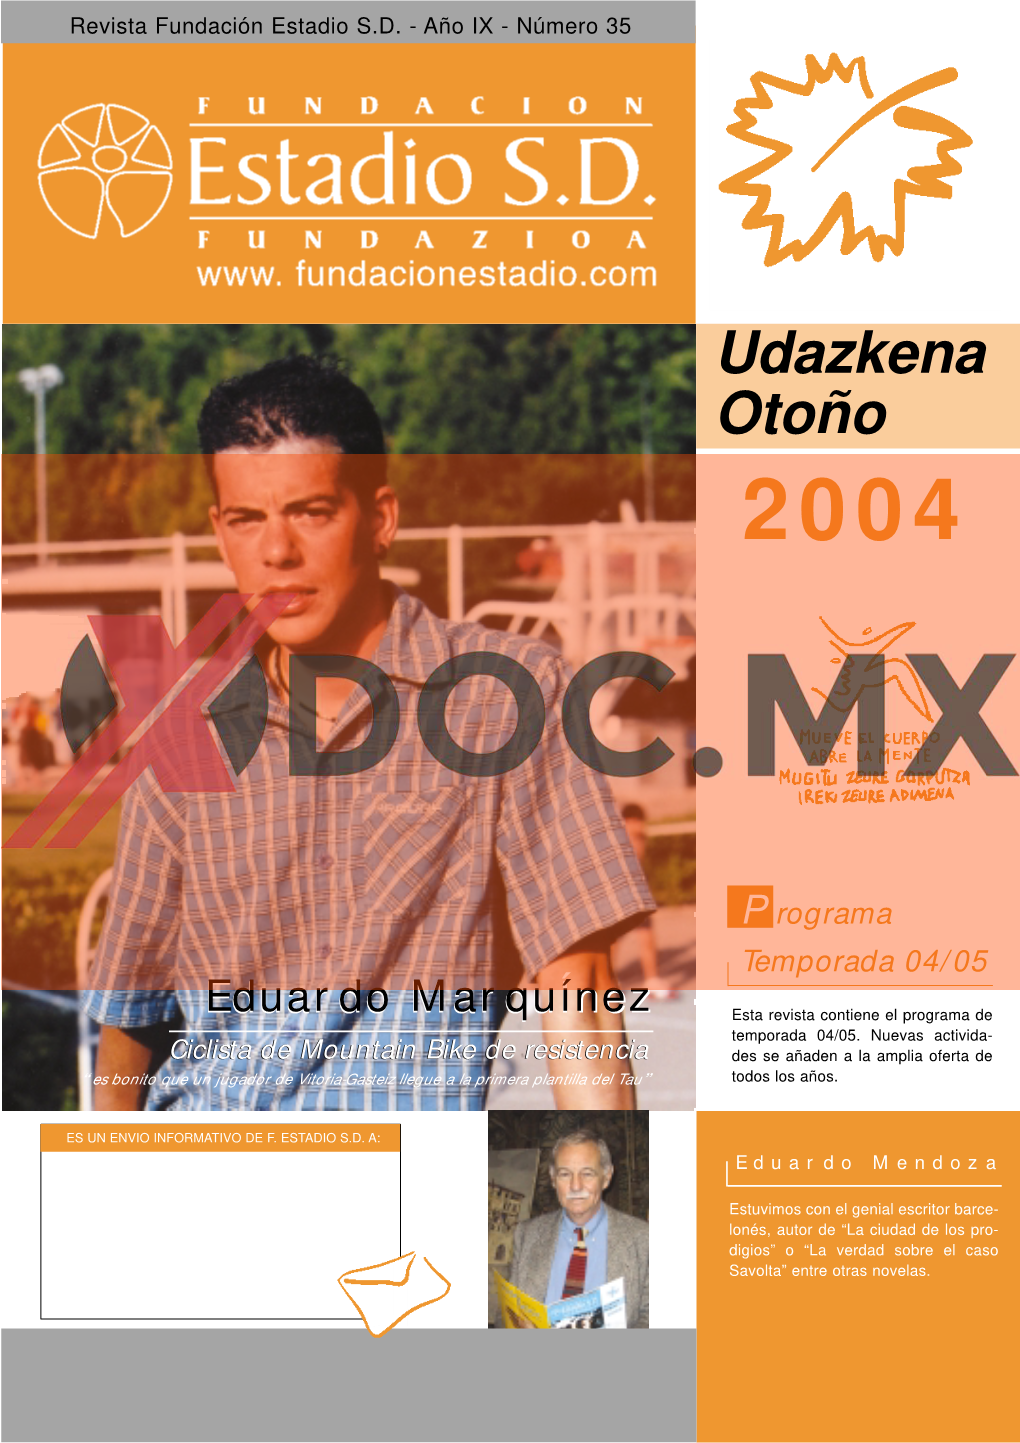 Udazkena Otoño 2004